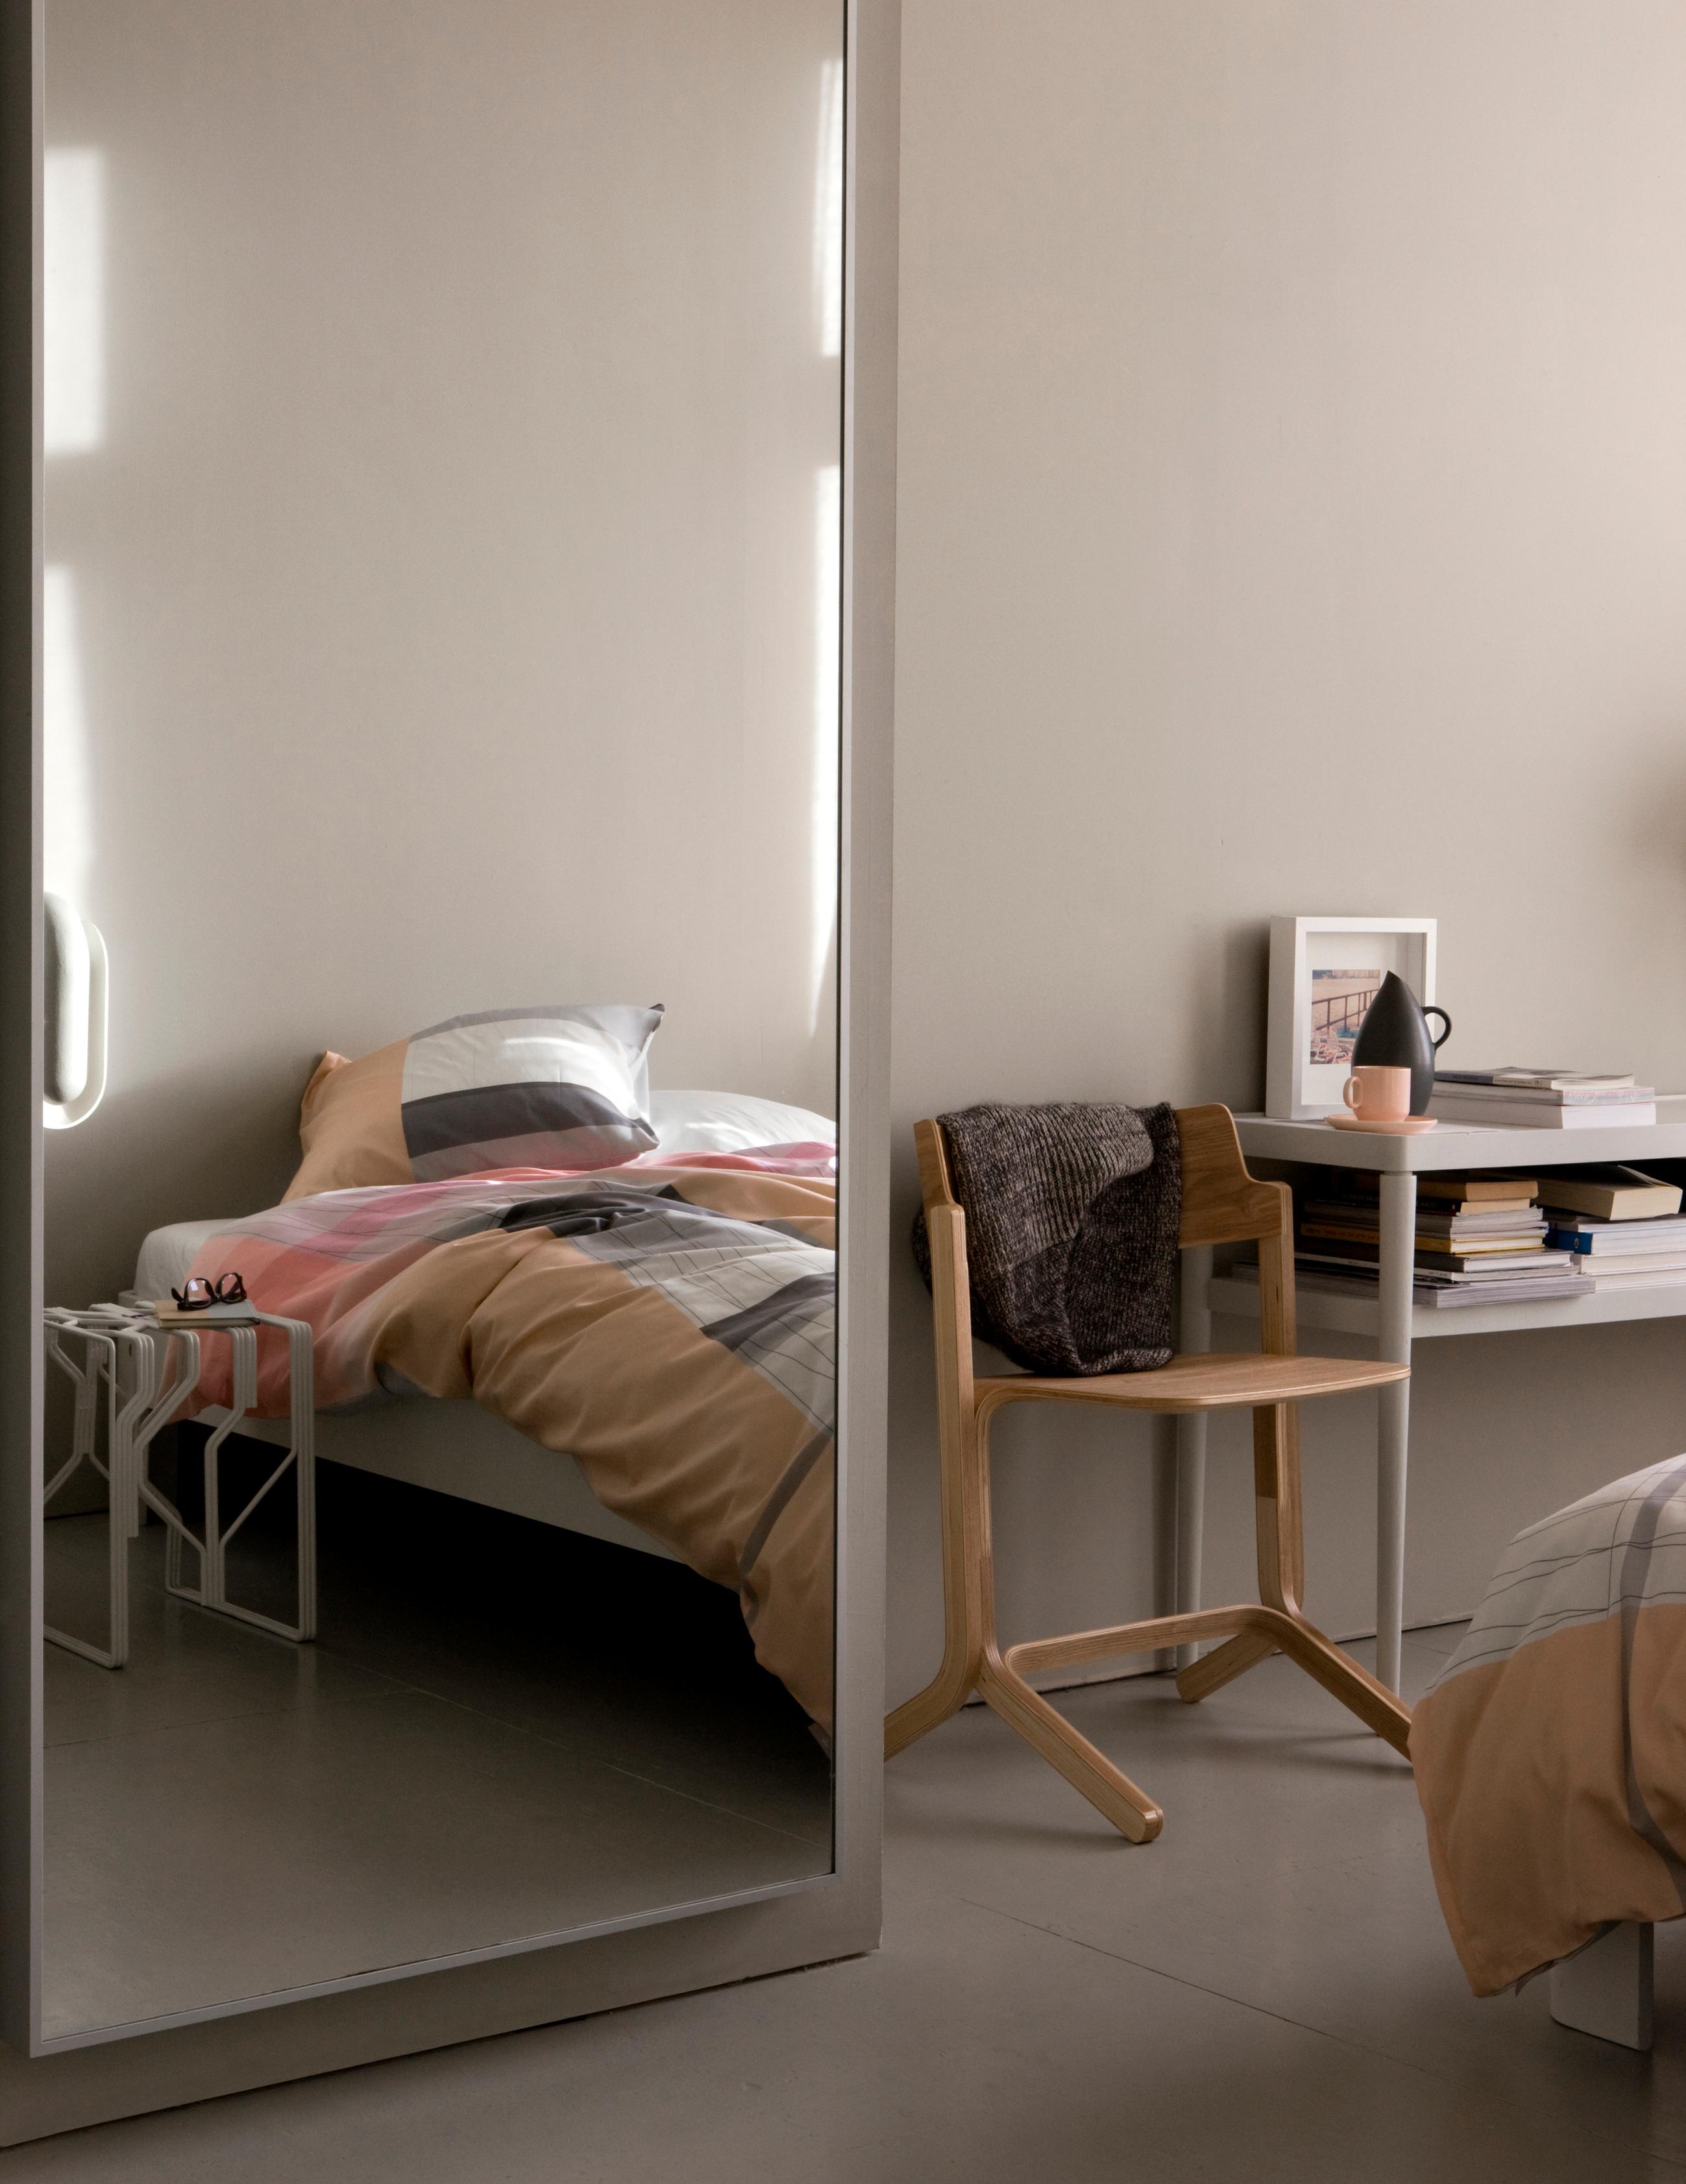 Modernes Schlafzimmer #stuhl #bett #bettwäsche #wandspiegel #buntebettwäsche #tisch ©Hay